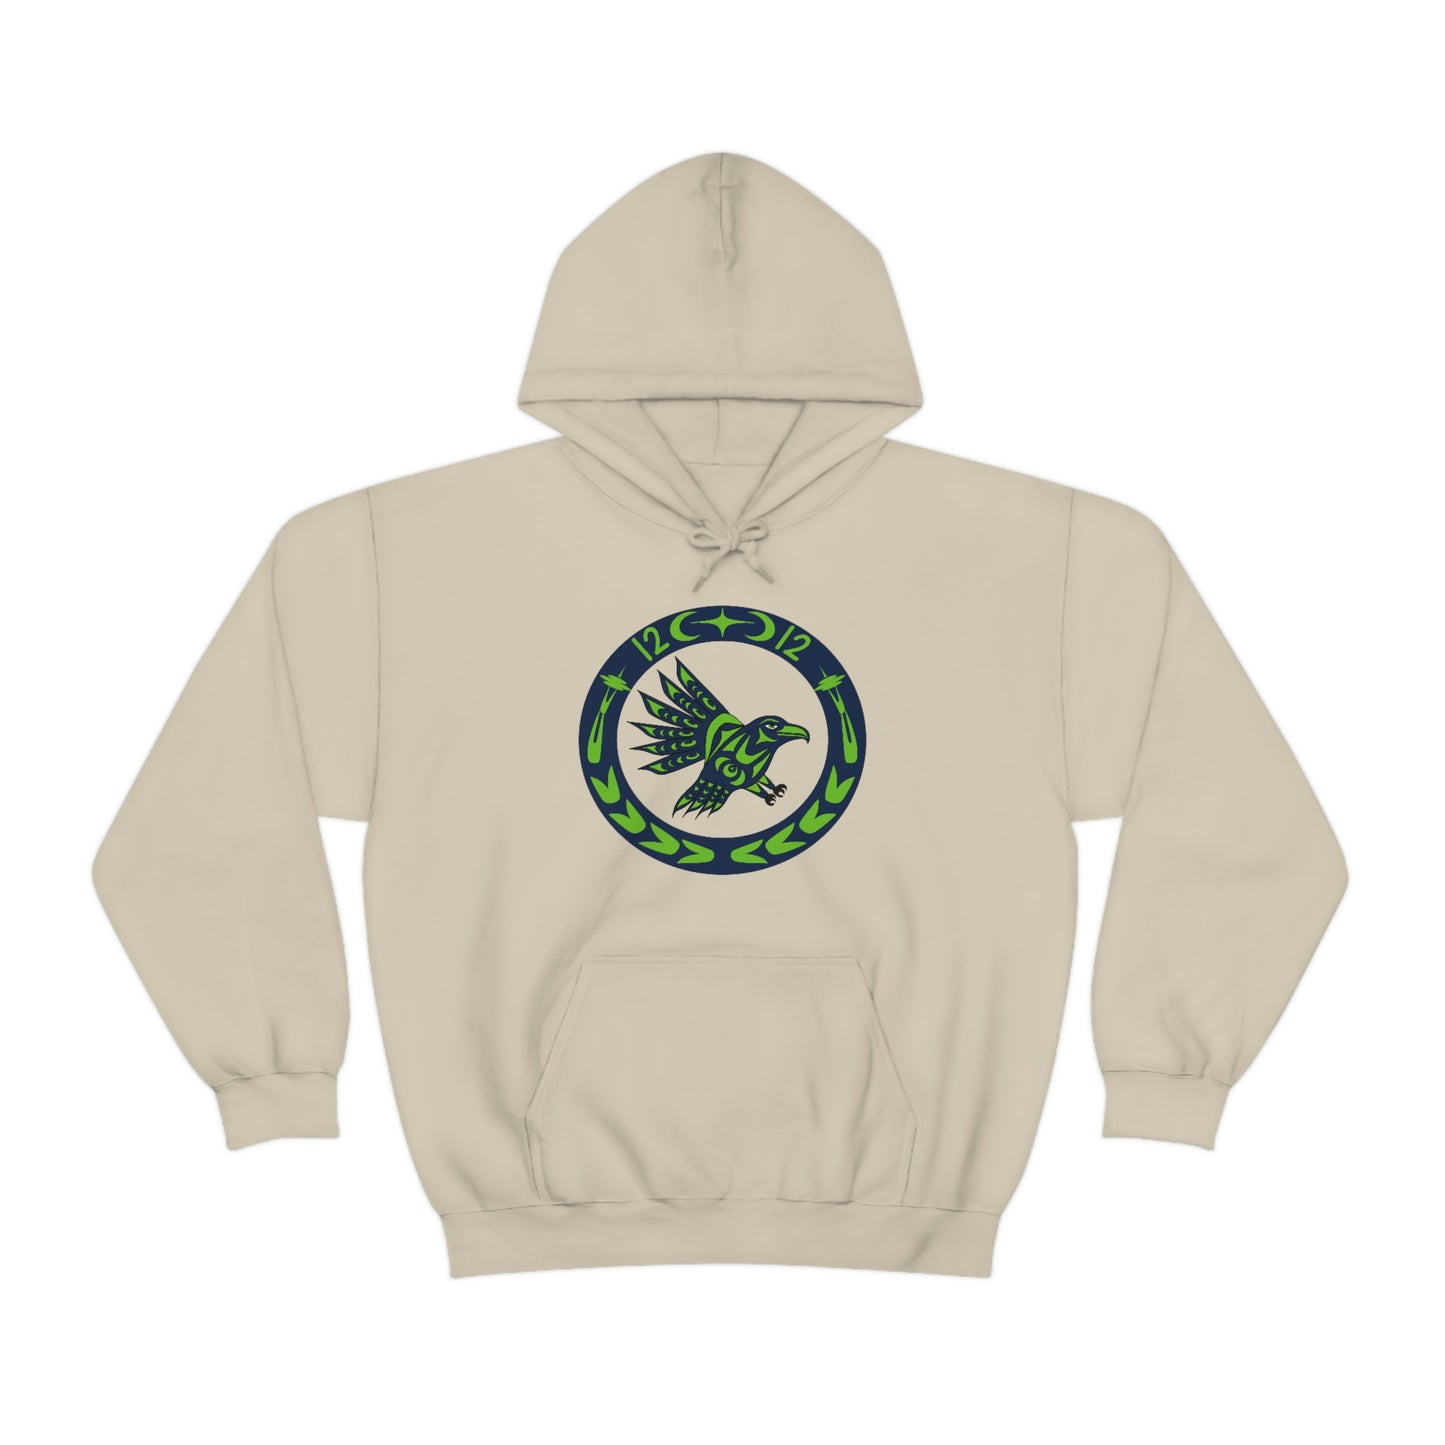 Hawks hoodie